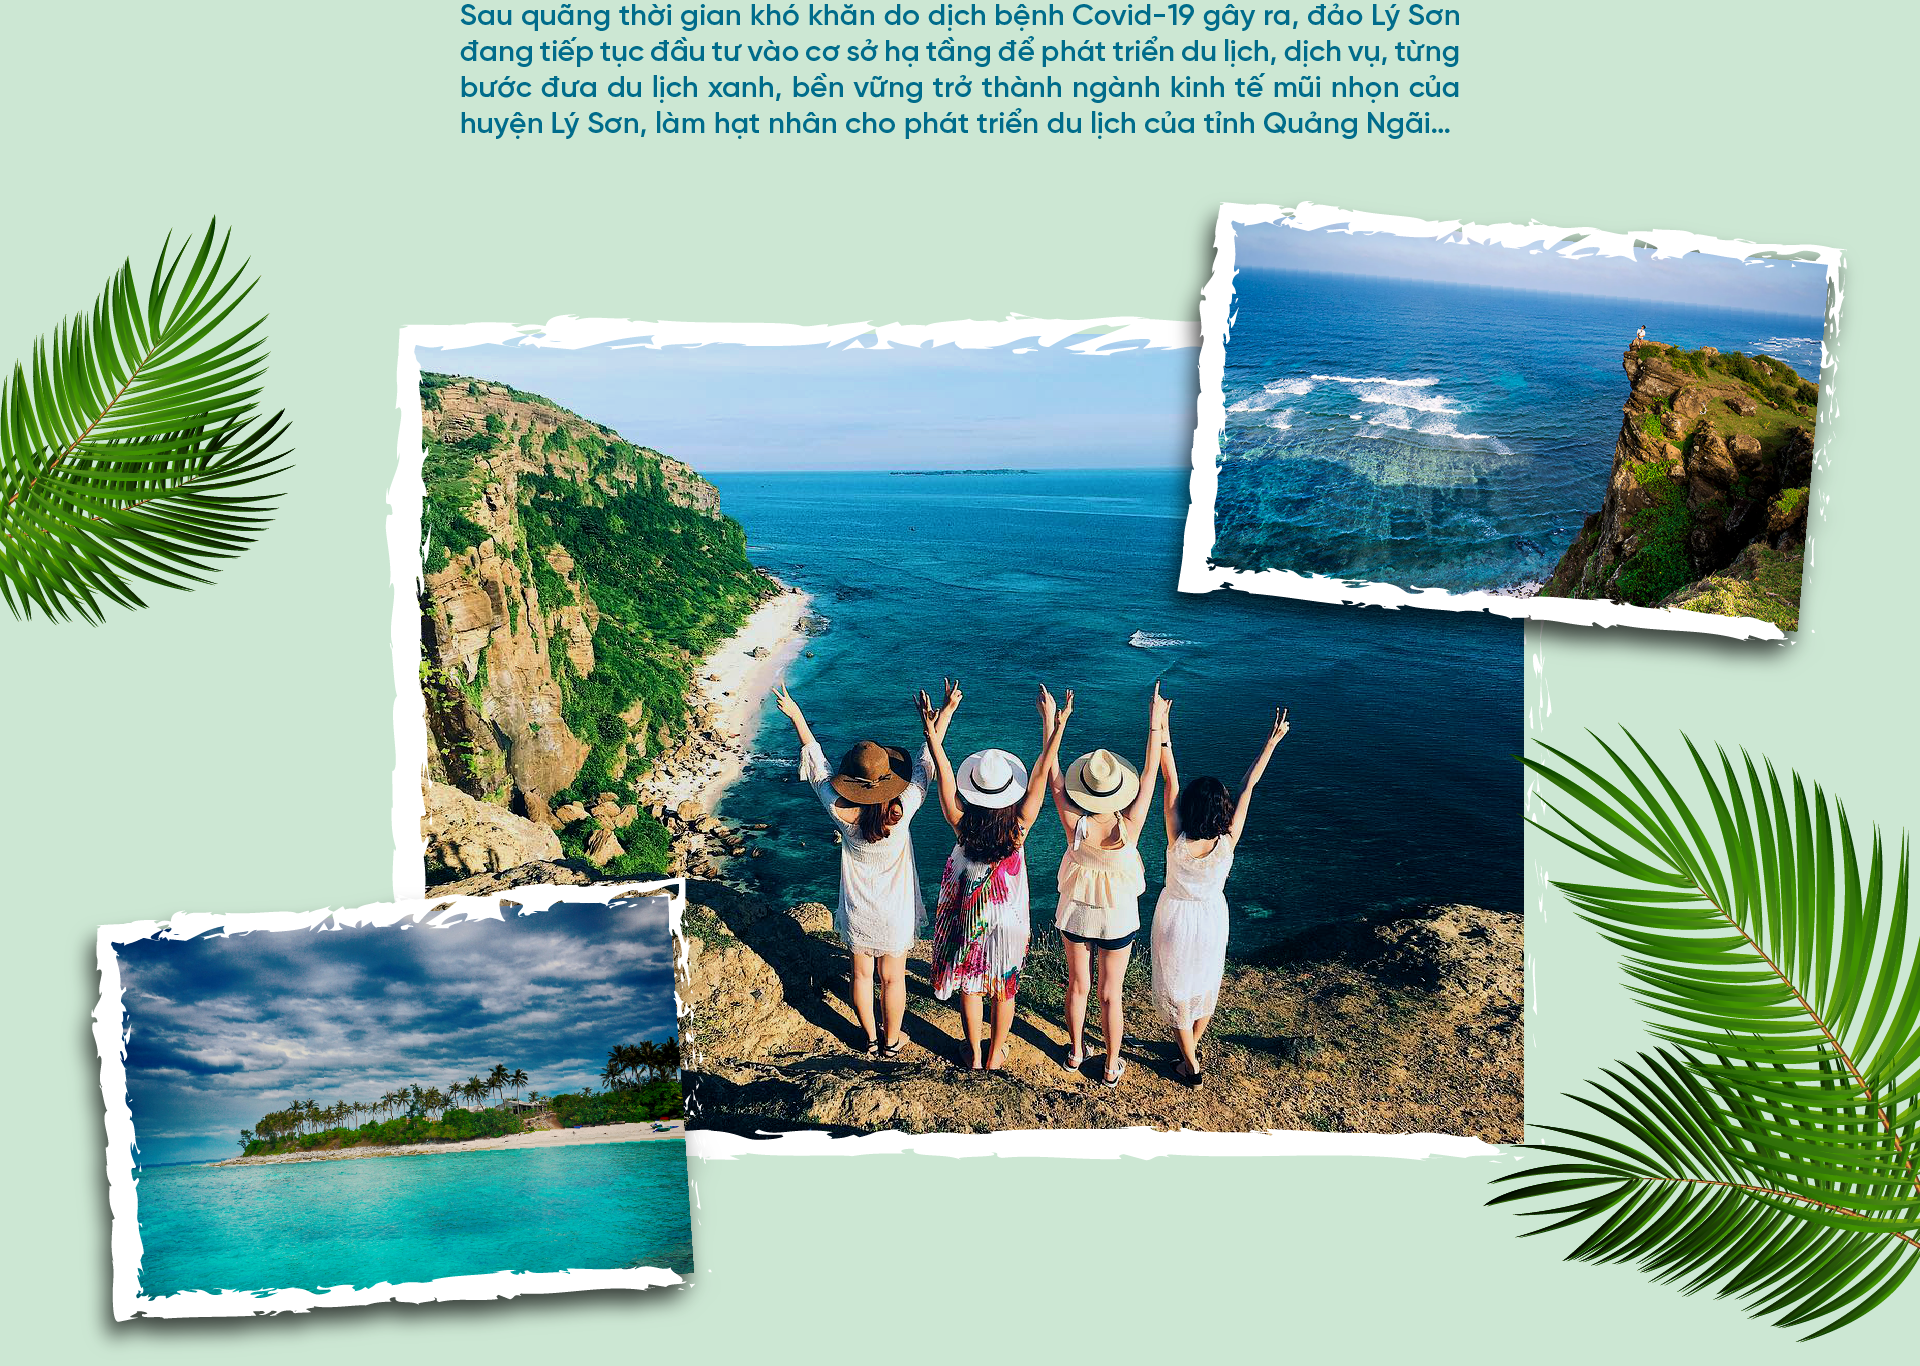 Đảo Lý Sơn phát triển xanh, xứng danh “thiên đường” du lịch  - Ảnh 2